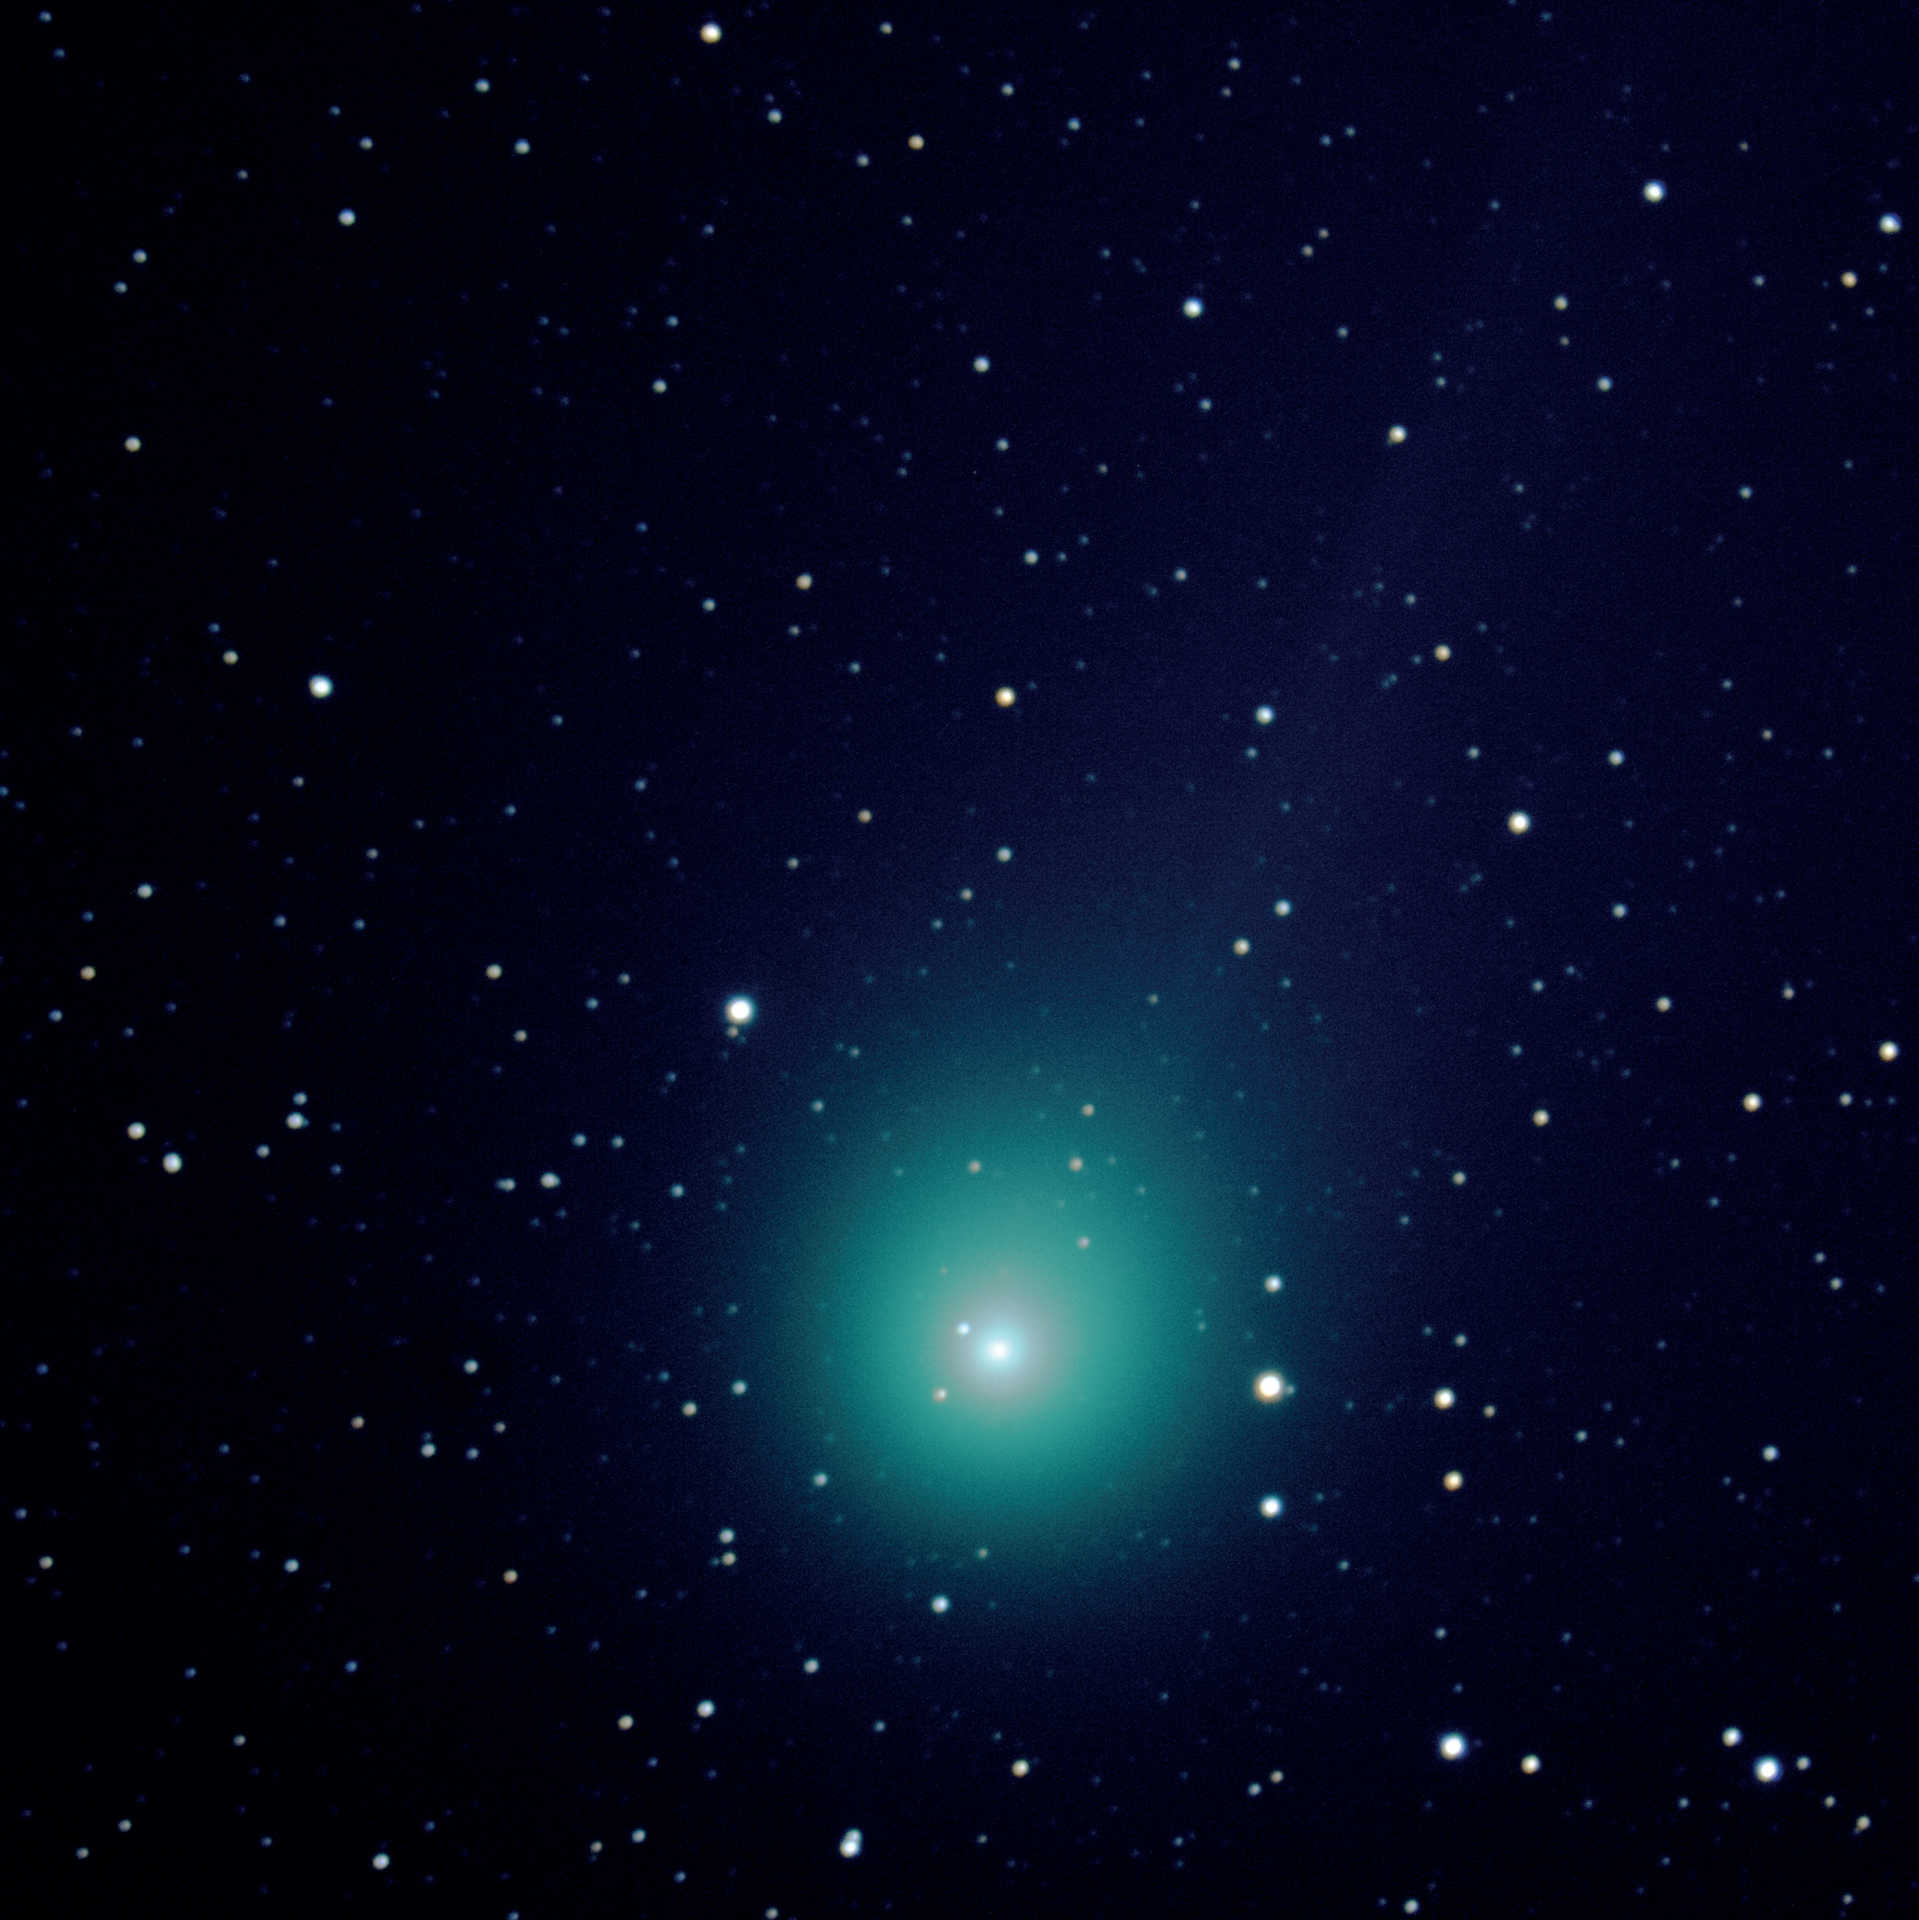 Kometa C/2014 Q2 (Lovejoy) z długoogniskowego teleskopu Schmidta-Cassegraina. Zdjęcie wykonano 7.03.2015 kilka minut po zdjęciu pokazanym wyżej aparatem Canon D550 i teleskopem o ogniskowej 2000mm i aperturze 280mm. Do zdjęcia sumarycznego wykorzystano pięć ekspozycji o czasie naświetlania 120 sekund każda (całkowity czas naświetlania: 10 minut) i połączono za pomocą oprogramowania DeepSkyStacker i Photoshop. U. Dittler